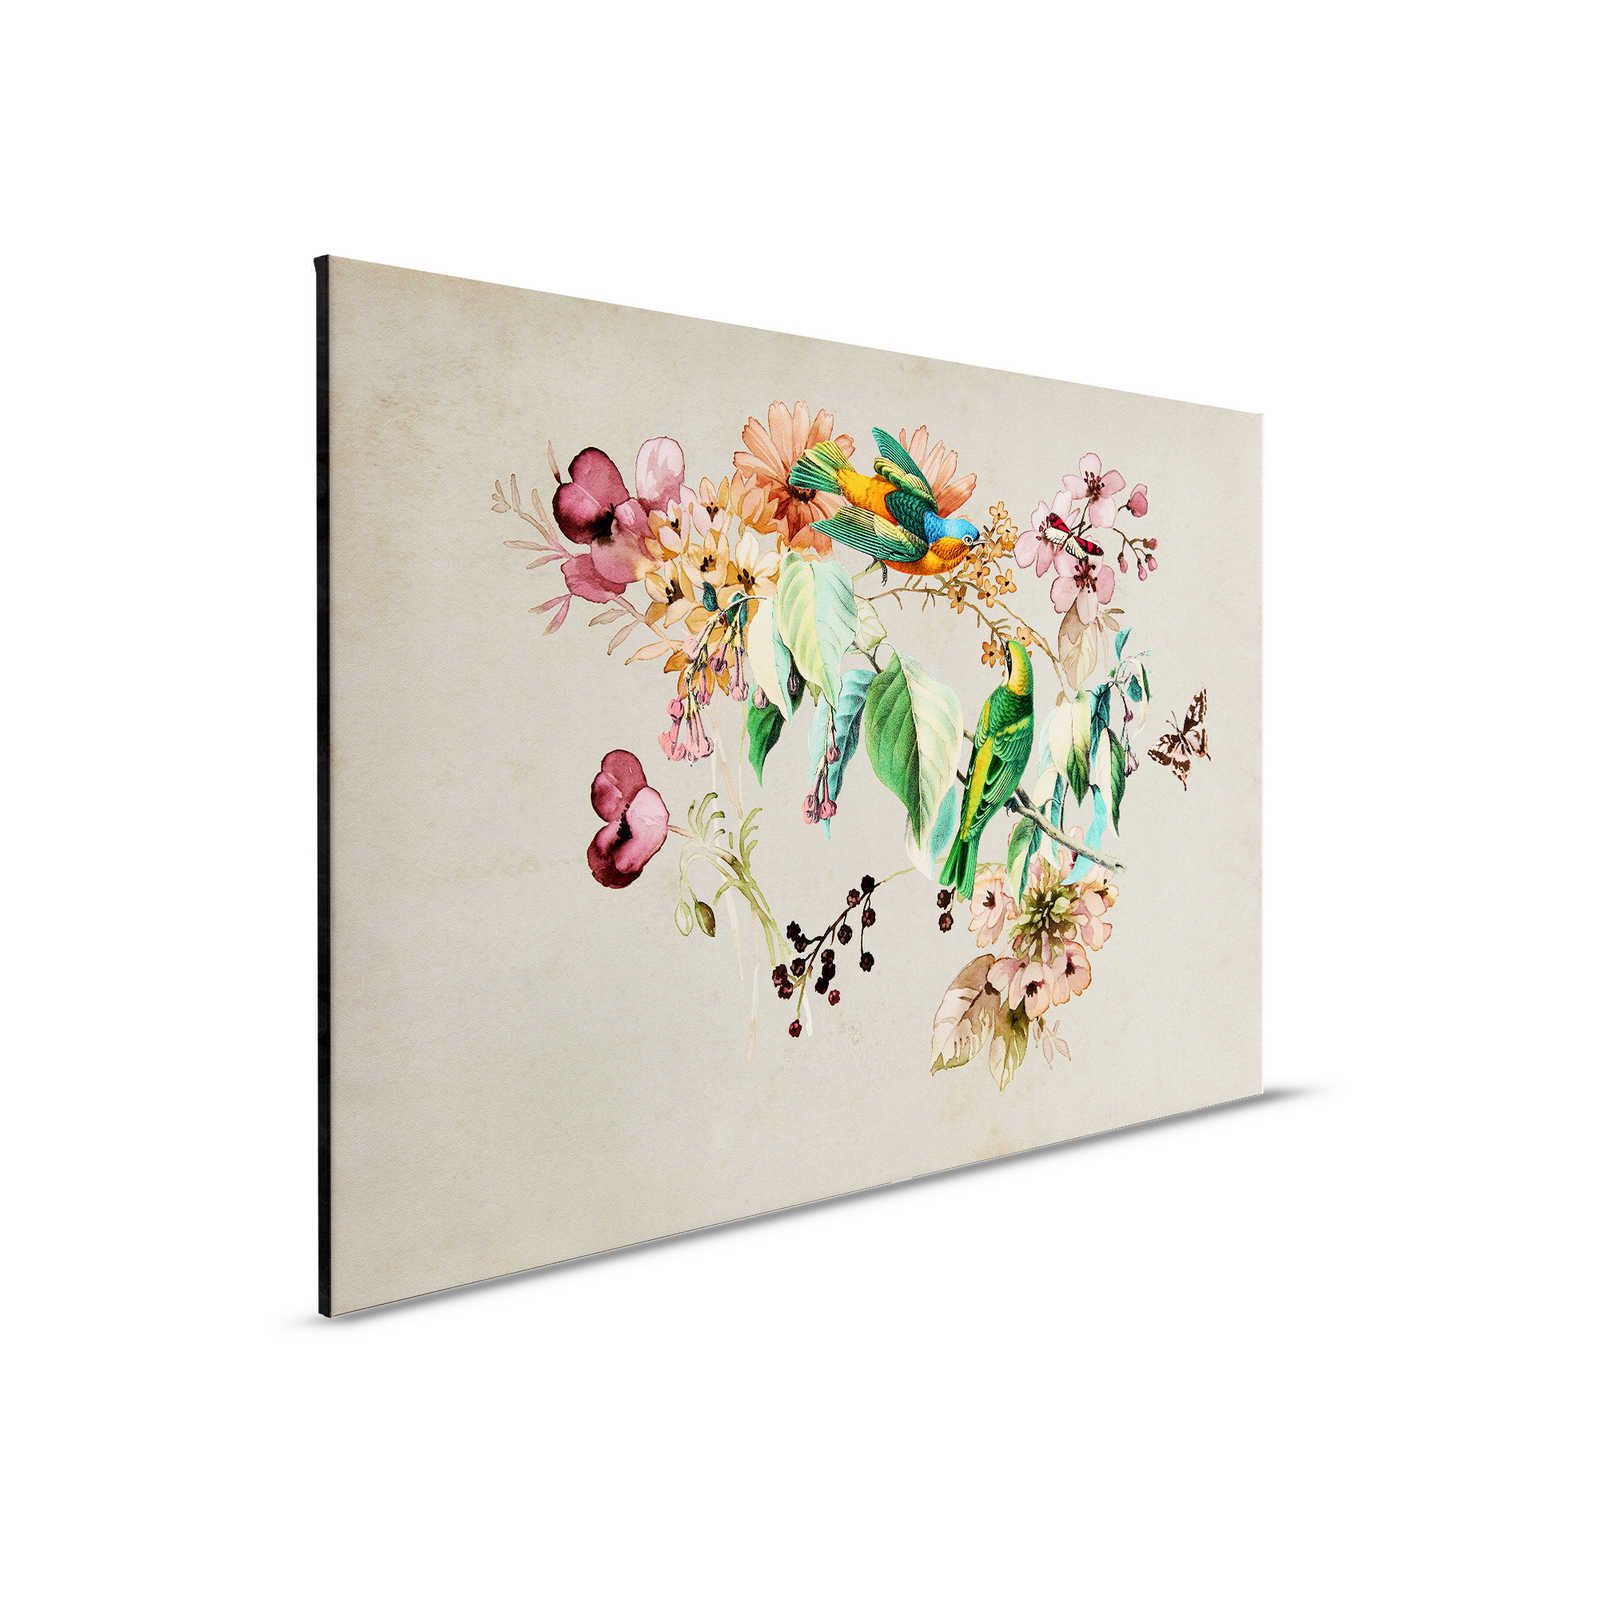 Love Nest 1 - Tableau toile avec fleurs aquarelles & oiseaux colorés - 0,90 m x 0,60 m
